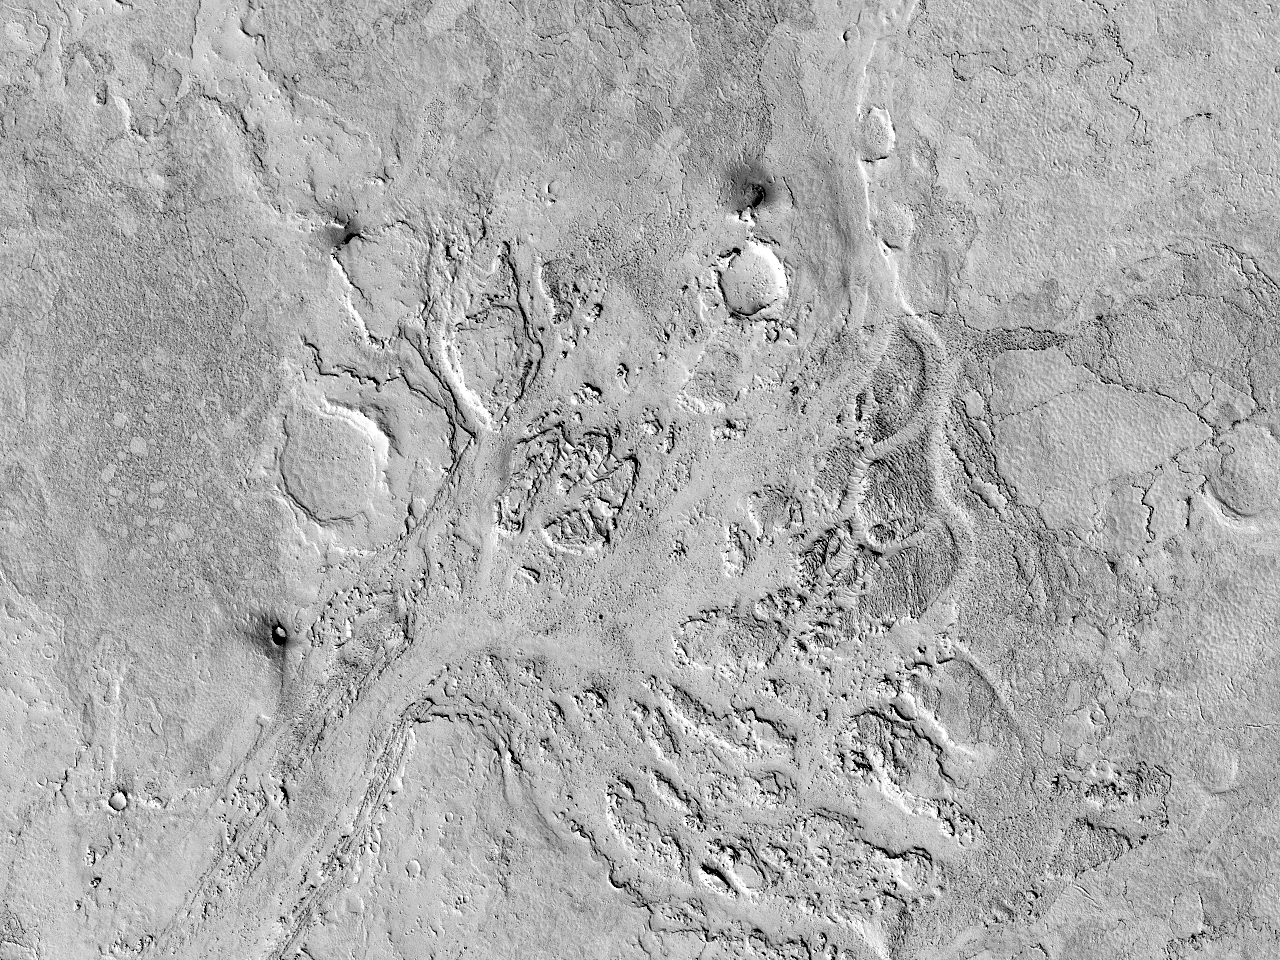 Ammyr Veg Çheu-hwoaie jeh Lethe Vallis ayns Elysium Planitia